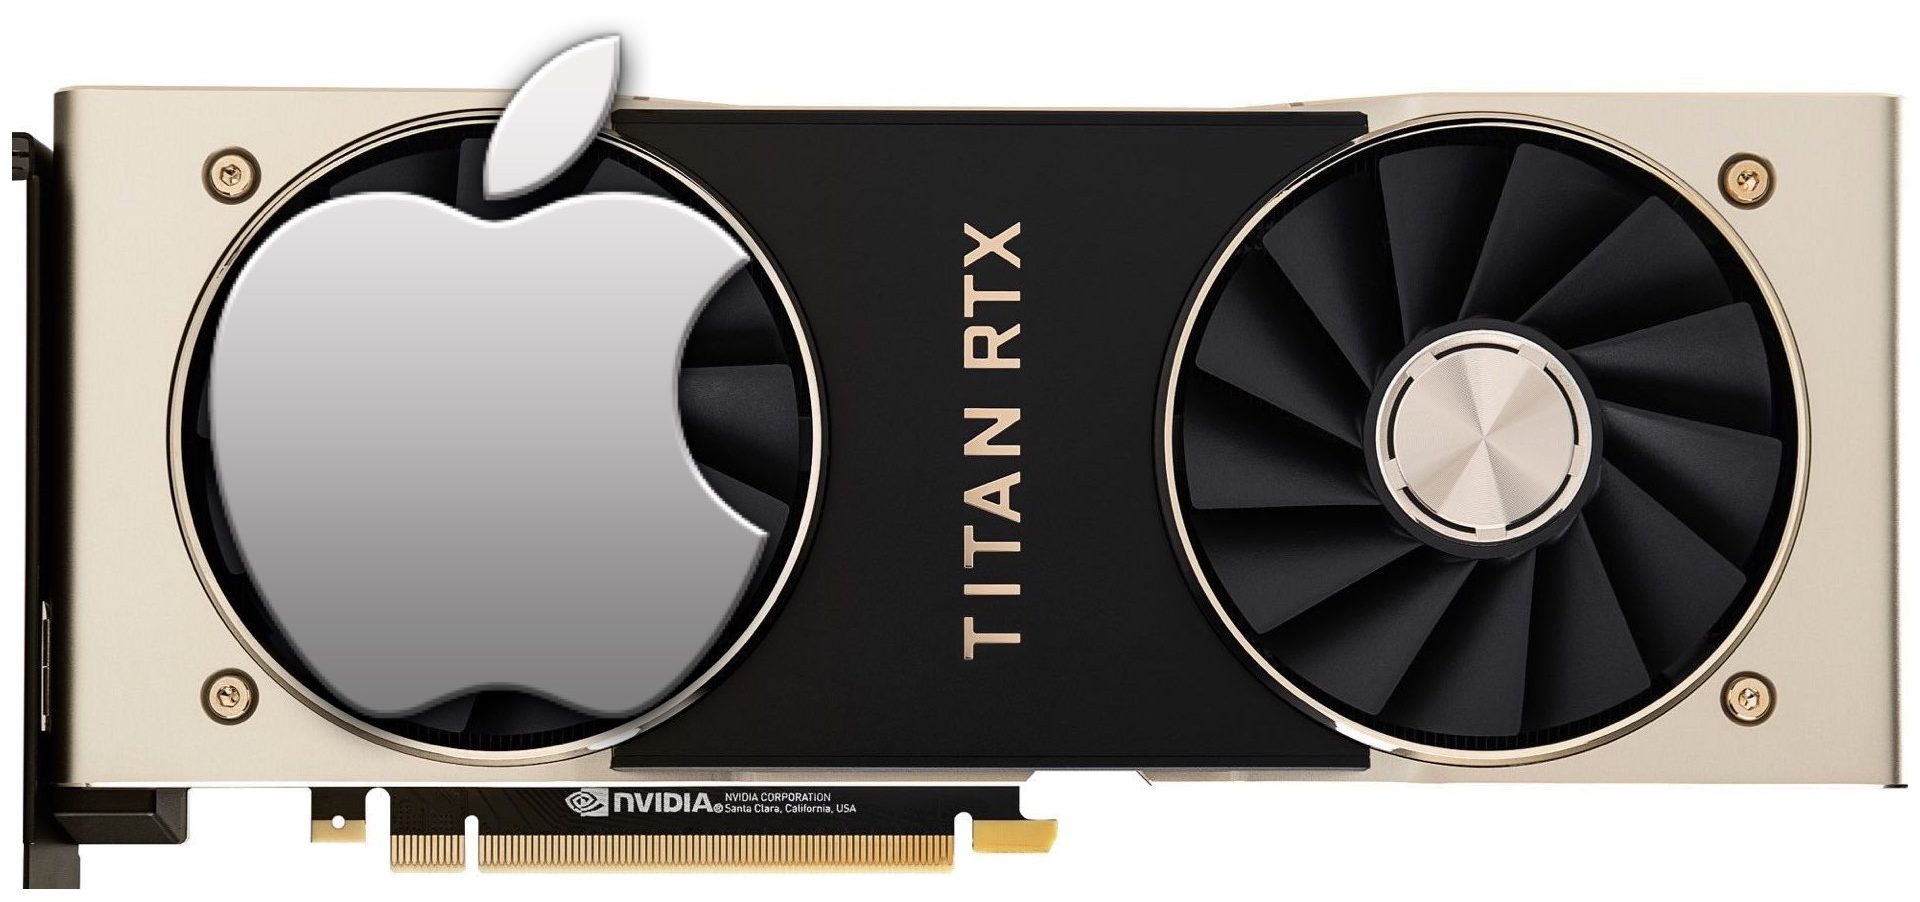 Titan RTX and the future Mac Pro